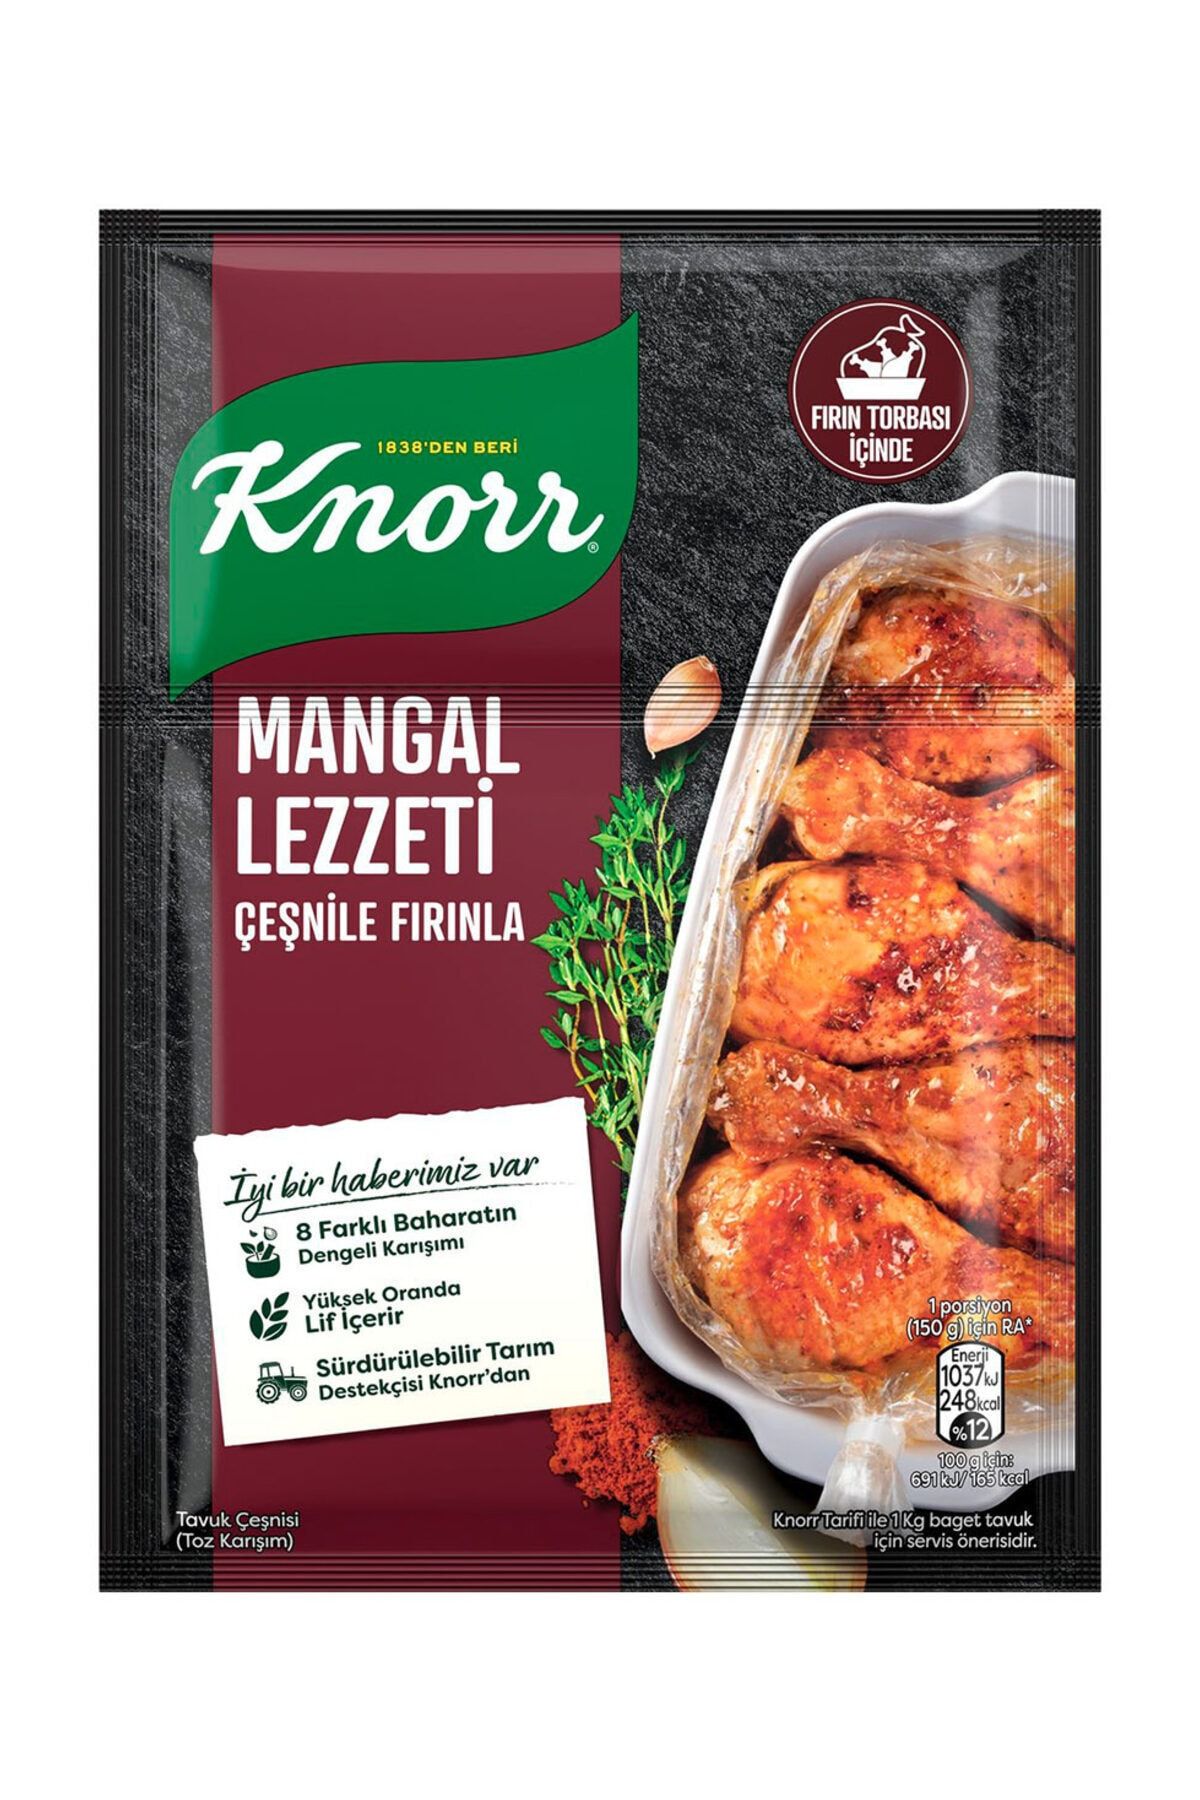 Knorr Mangal Lezzeti Fırında Tavuk Çeşnisi 48 gr